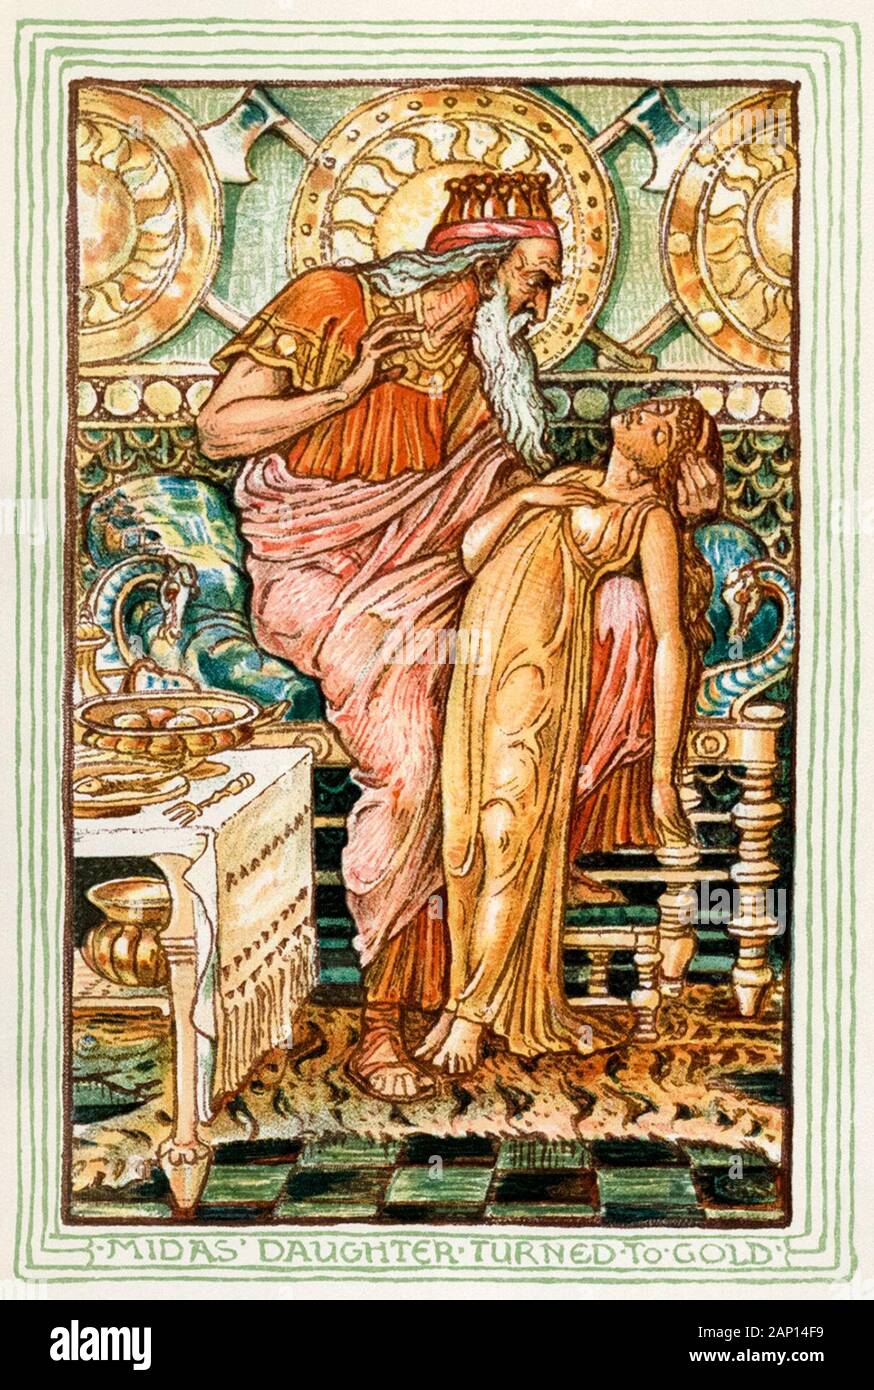 Le roi Midas tuning sa fille à l'or, illustration par Walter Crane, 1893 Banque D'Images